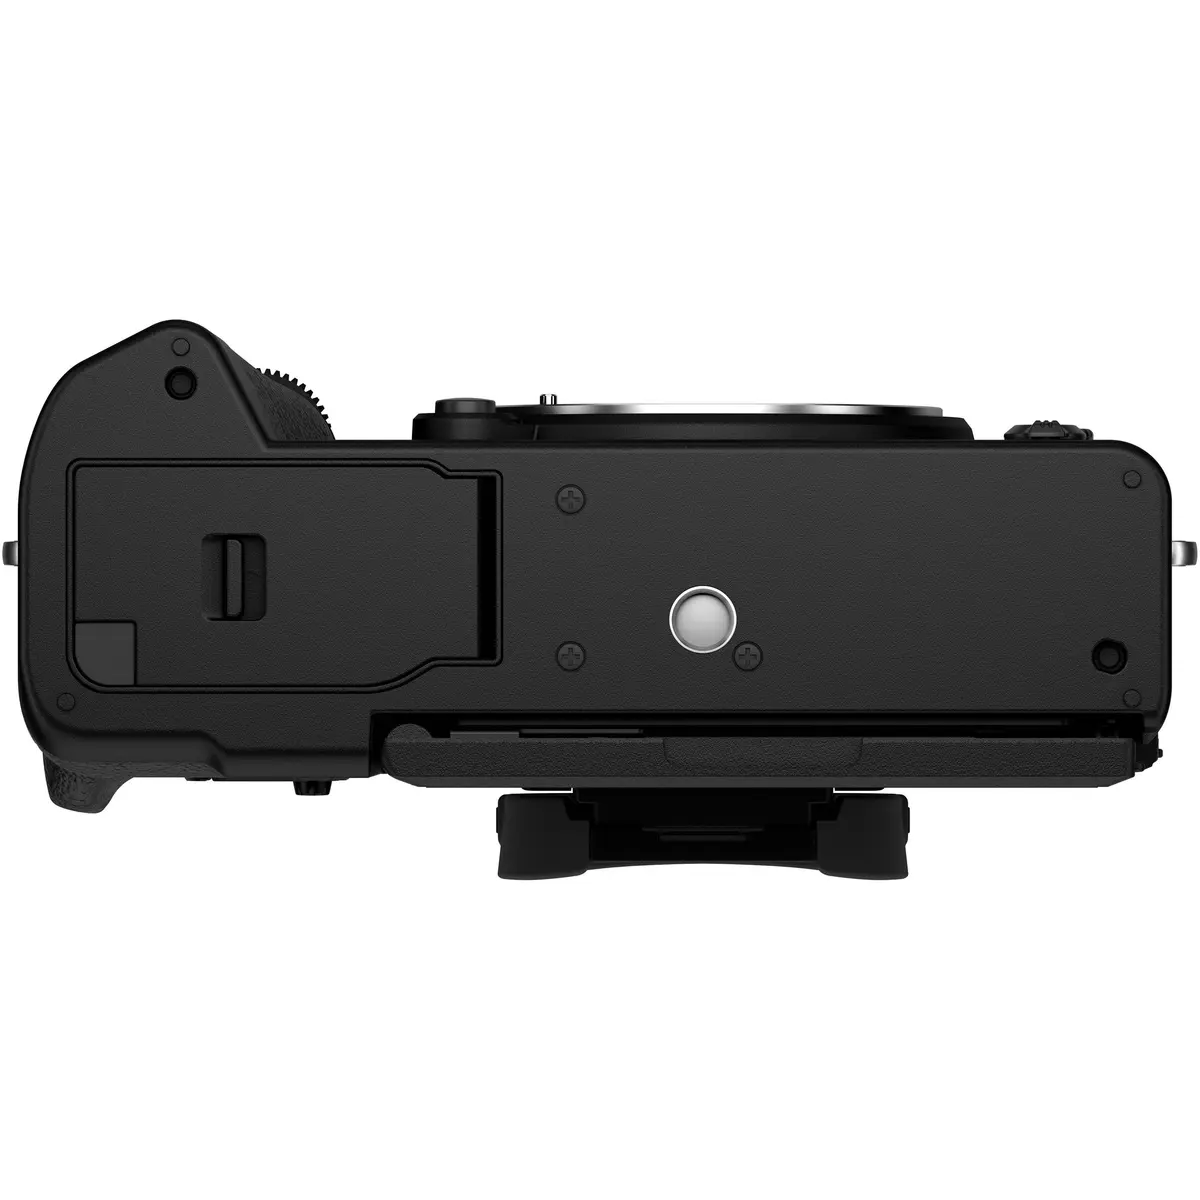 6. Fujifilm X-T5 Body Black